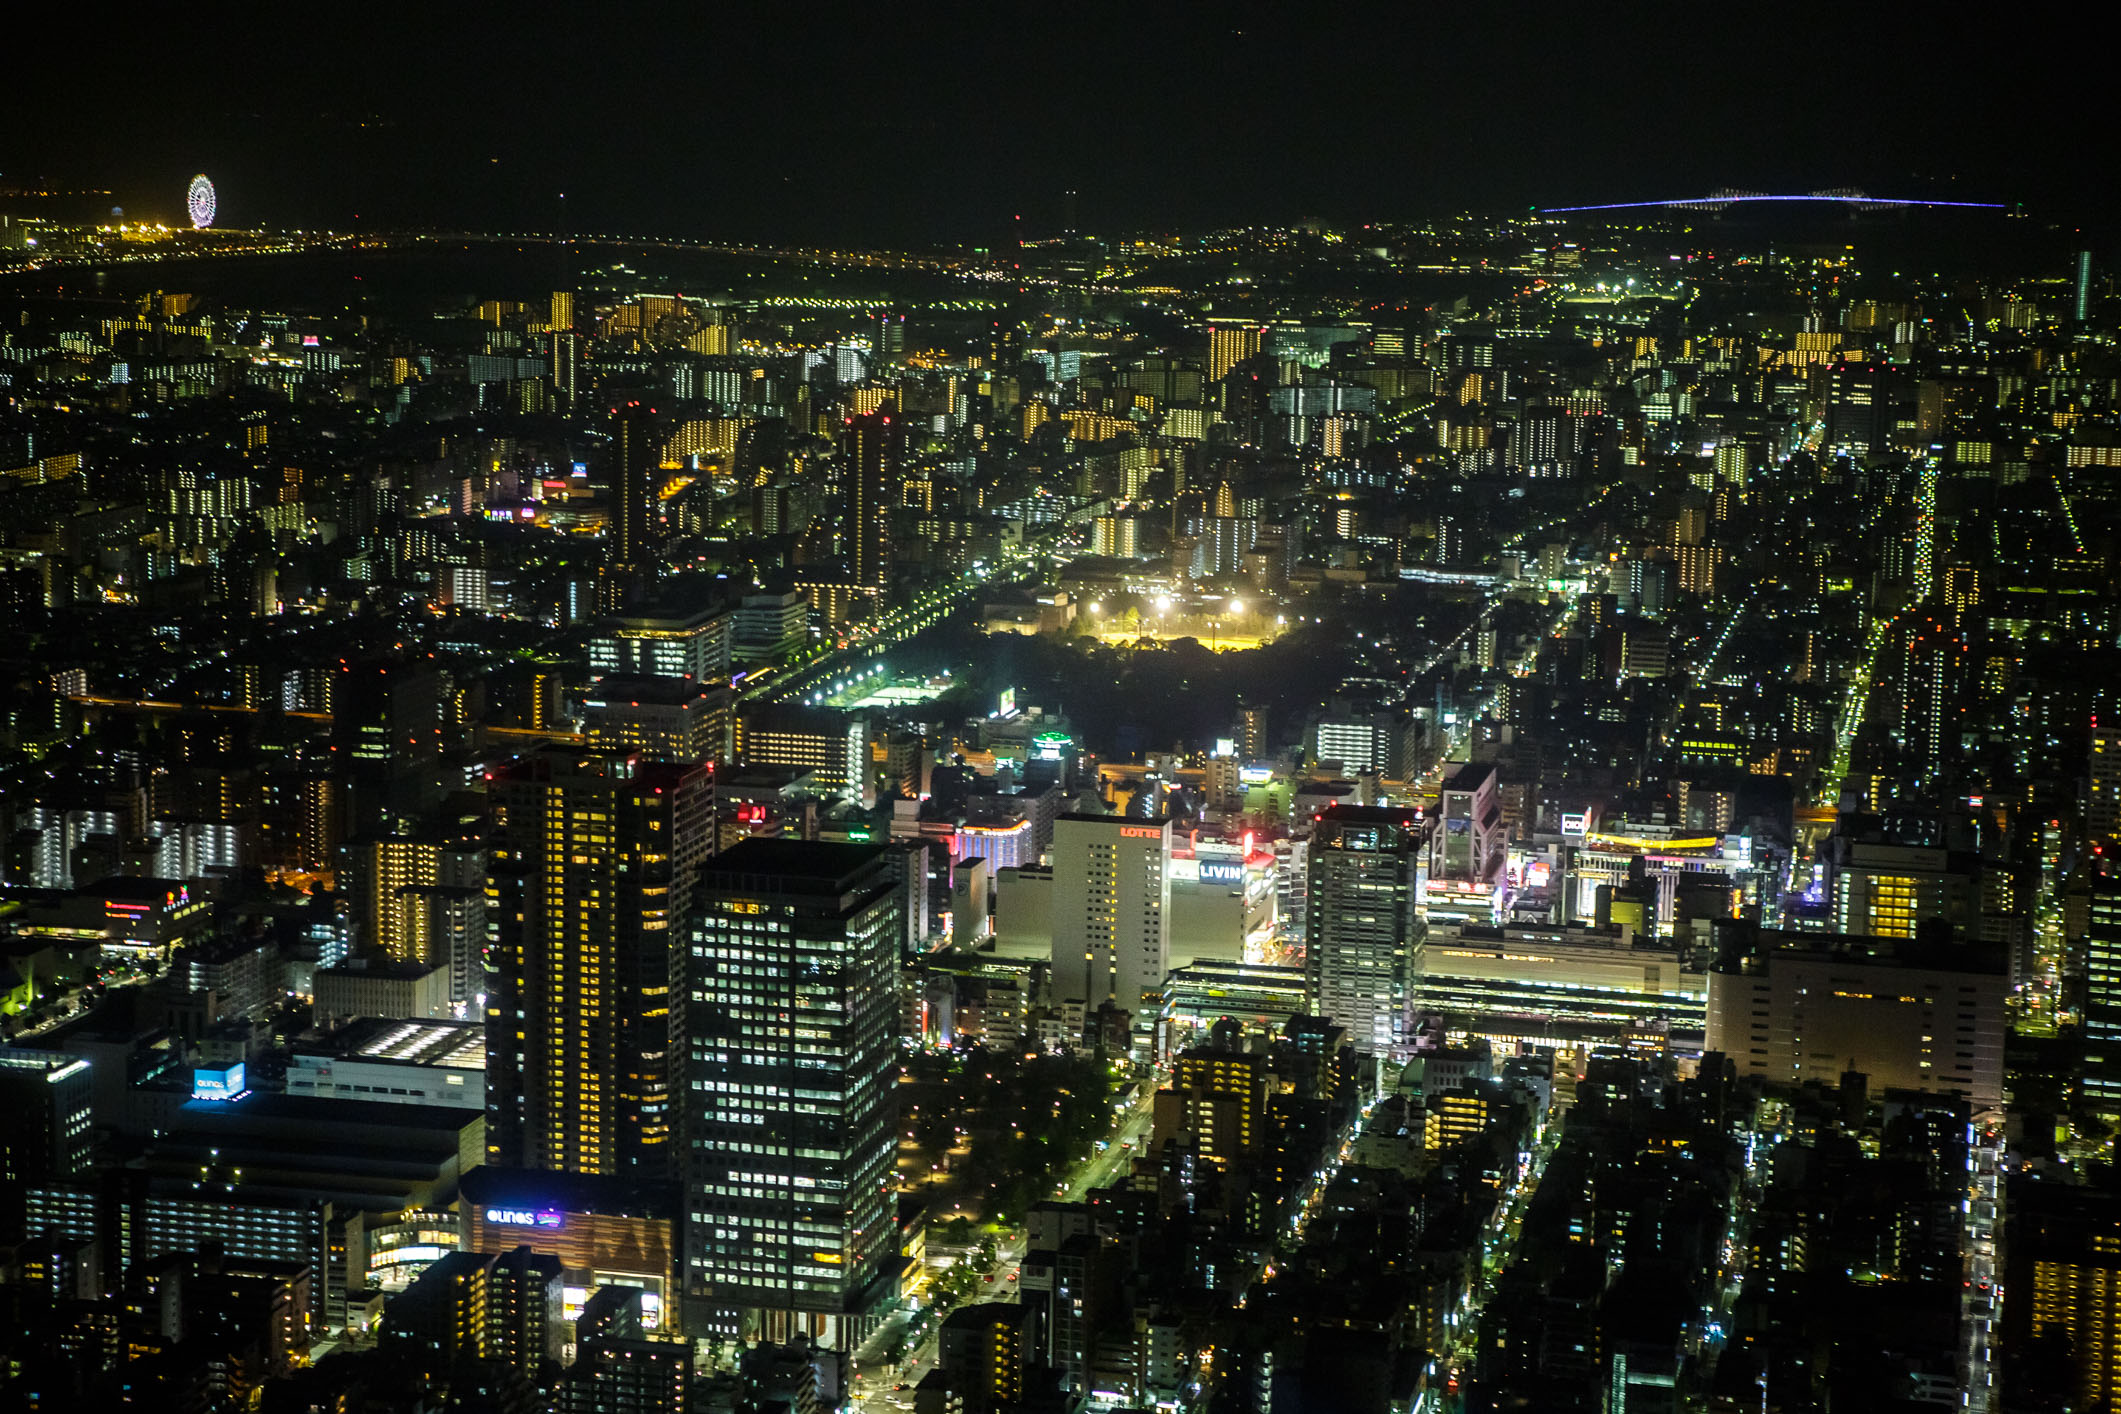 /Guewen/galeries/public/Voyages/Japon/Tokyo/Skytree-Tower/350/Skytree_18.jpg